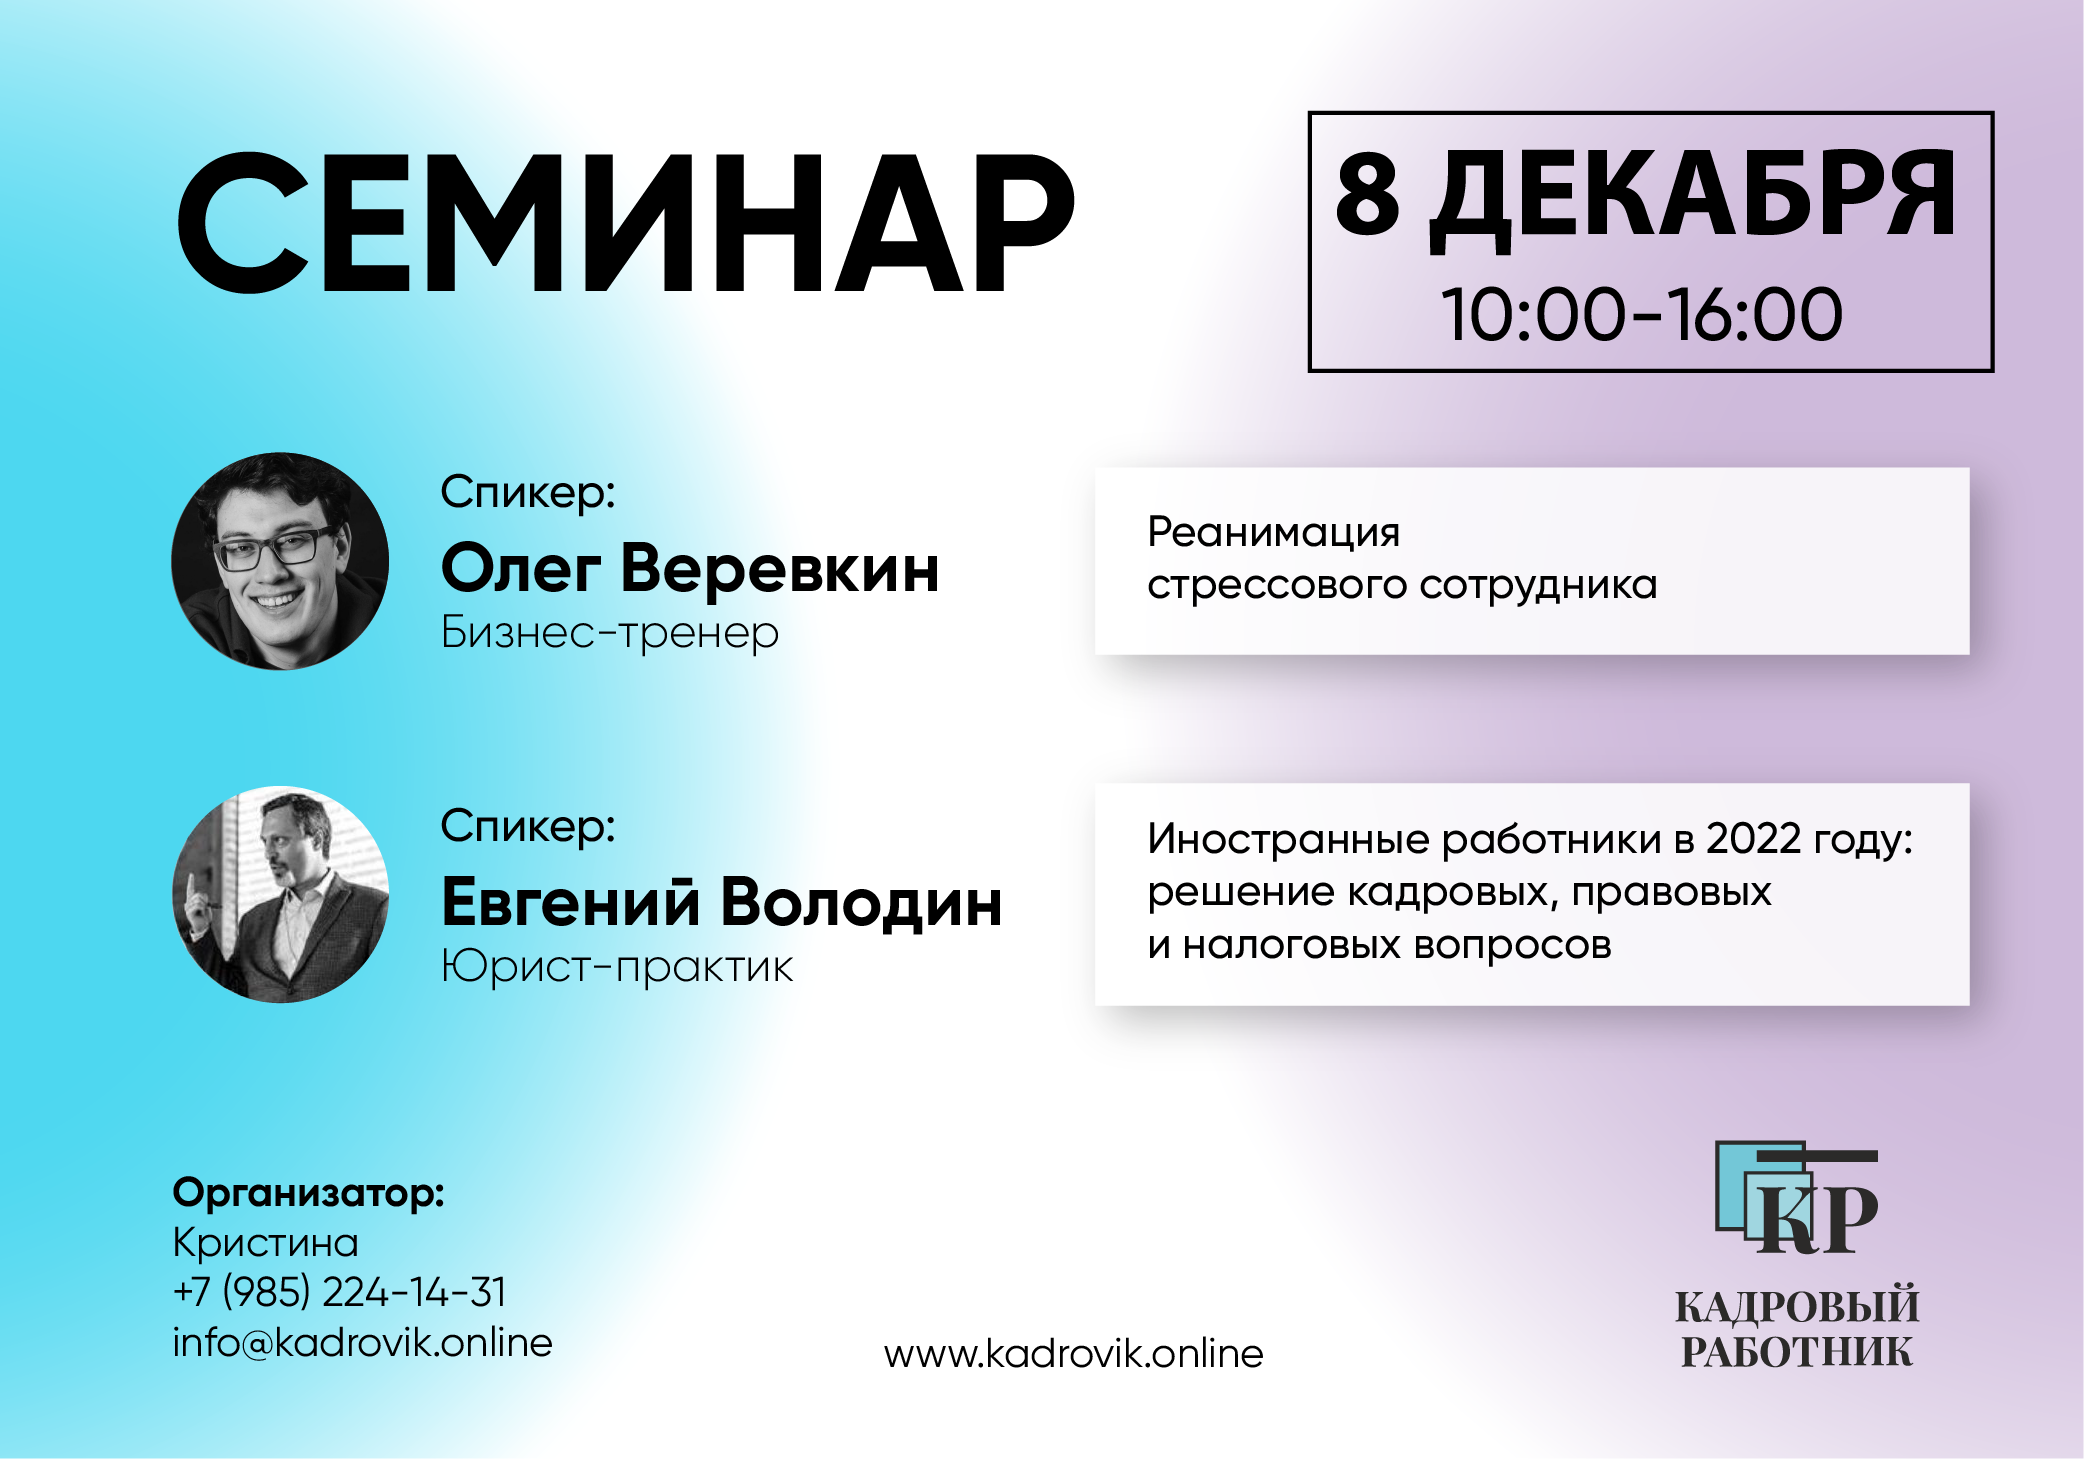 8 декабря в Москве пройдет семинар “Иностранные работники в 2022 году”